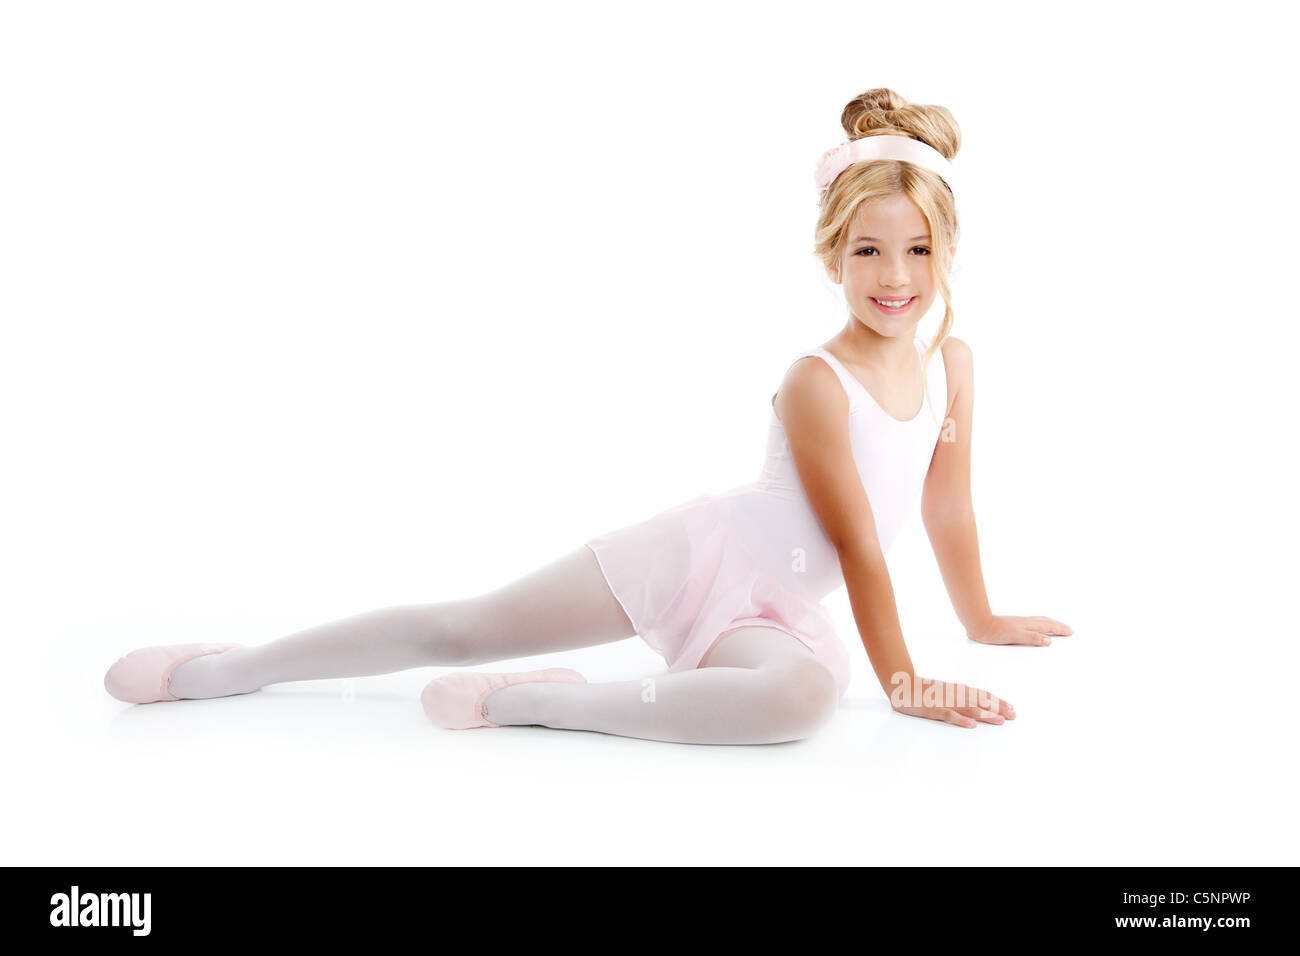 Peu ballerine danseuse de ballet s'étend aux enfants assis sur marbre blanc Banque D'Images